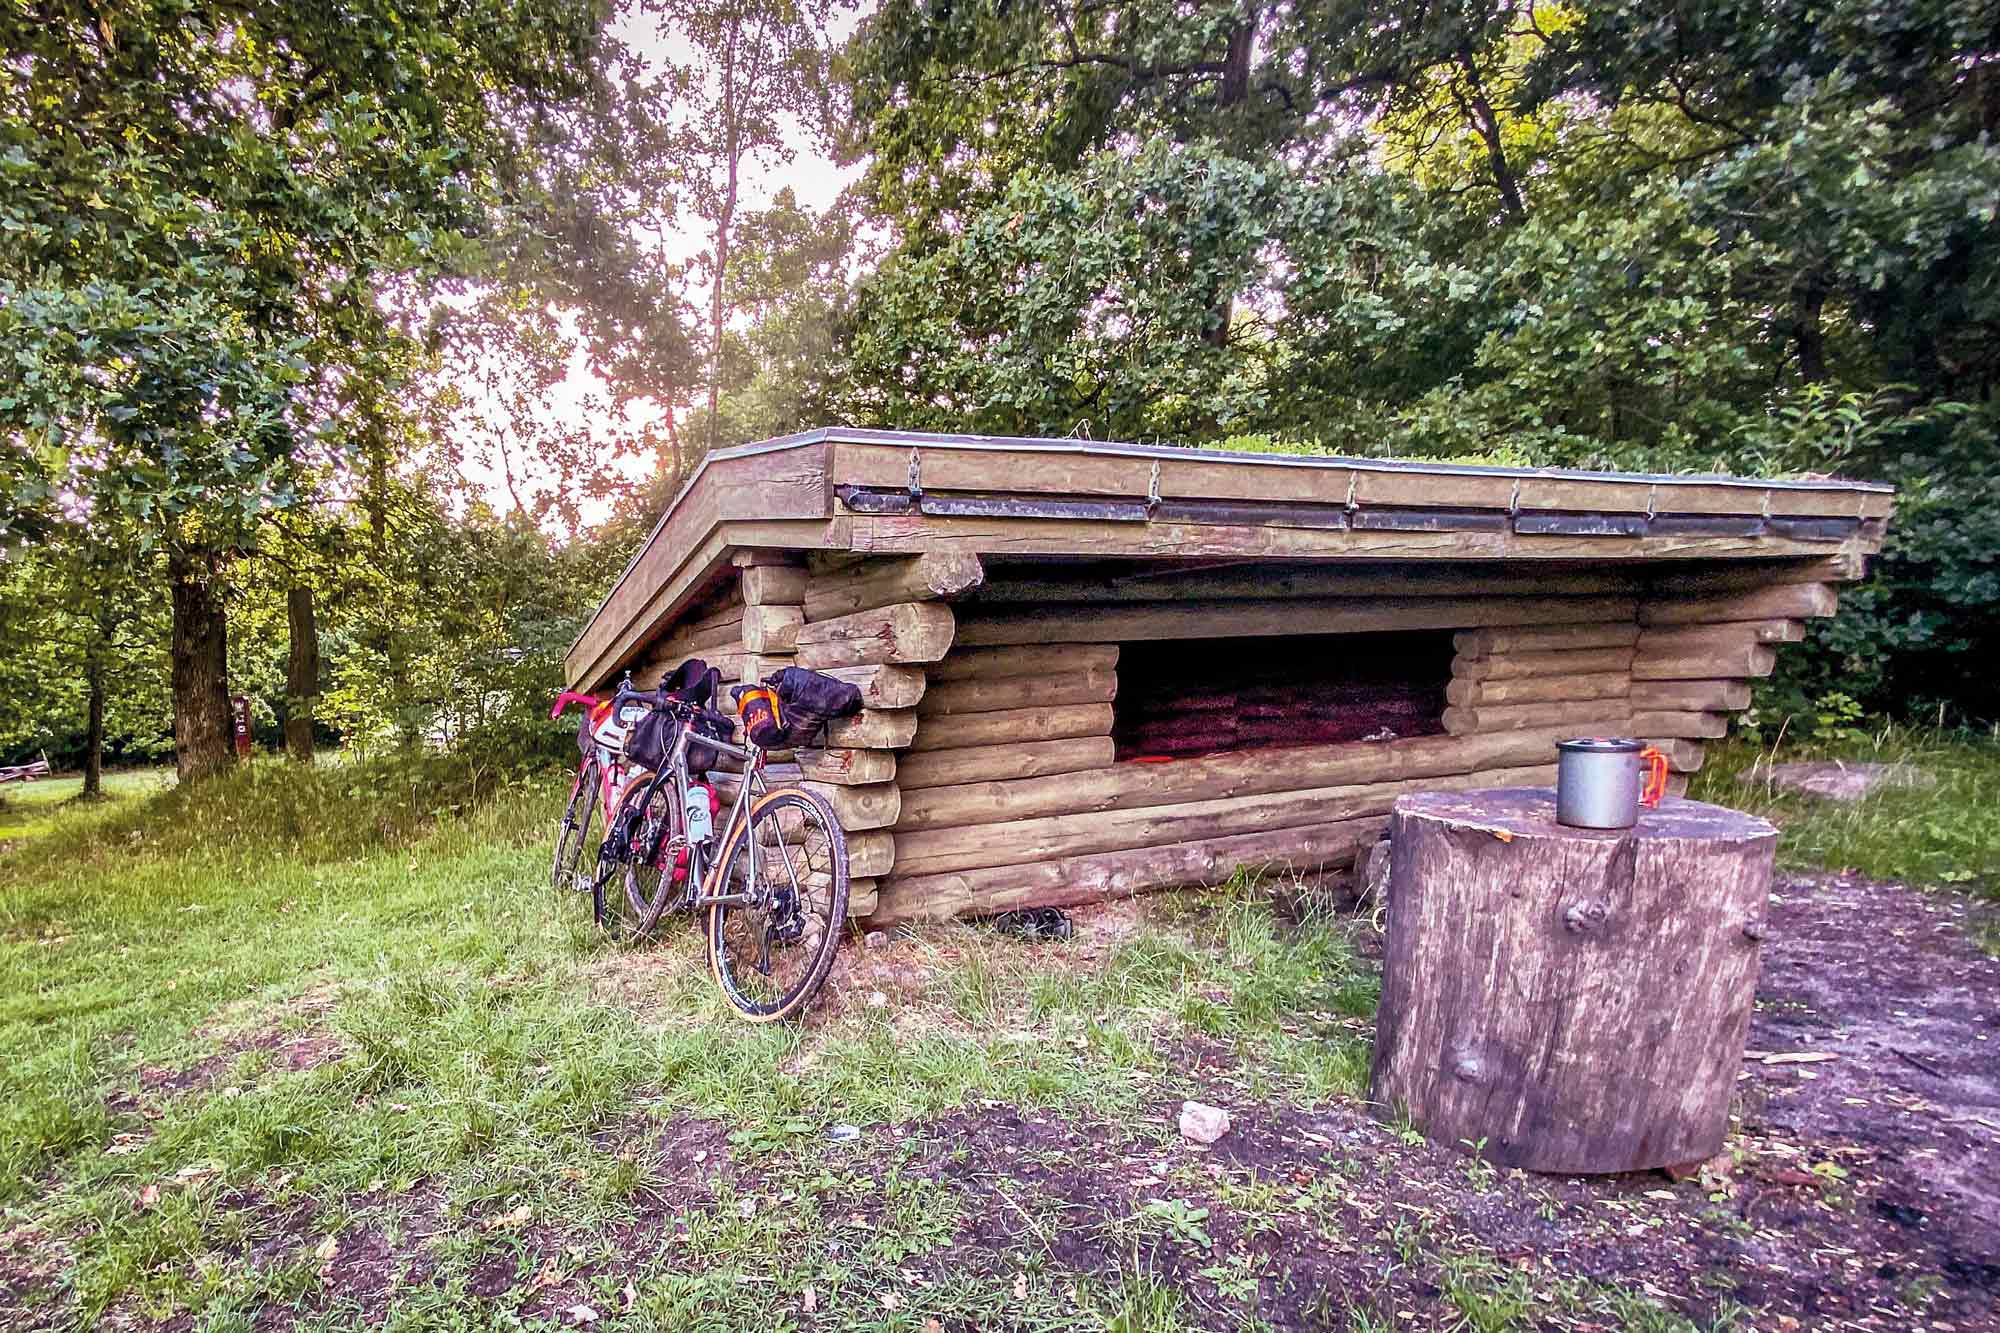 Ein dach über dem kopf ist beim übernachten in der natur eine feine sache! In dänemark findest du viele solcher shelter und damit ideale rahmenbedingungen fürs bikepacking in dänemark.